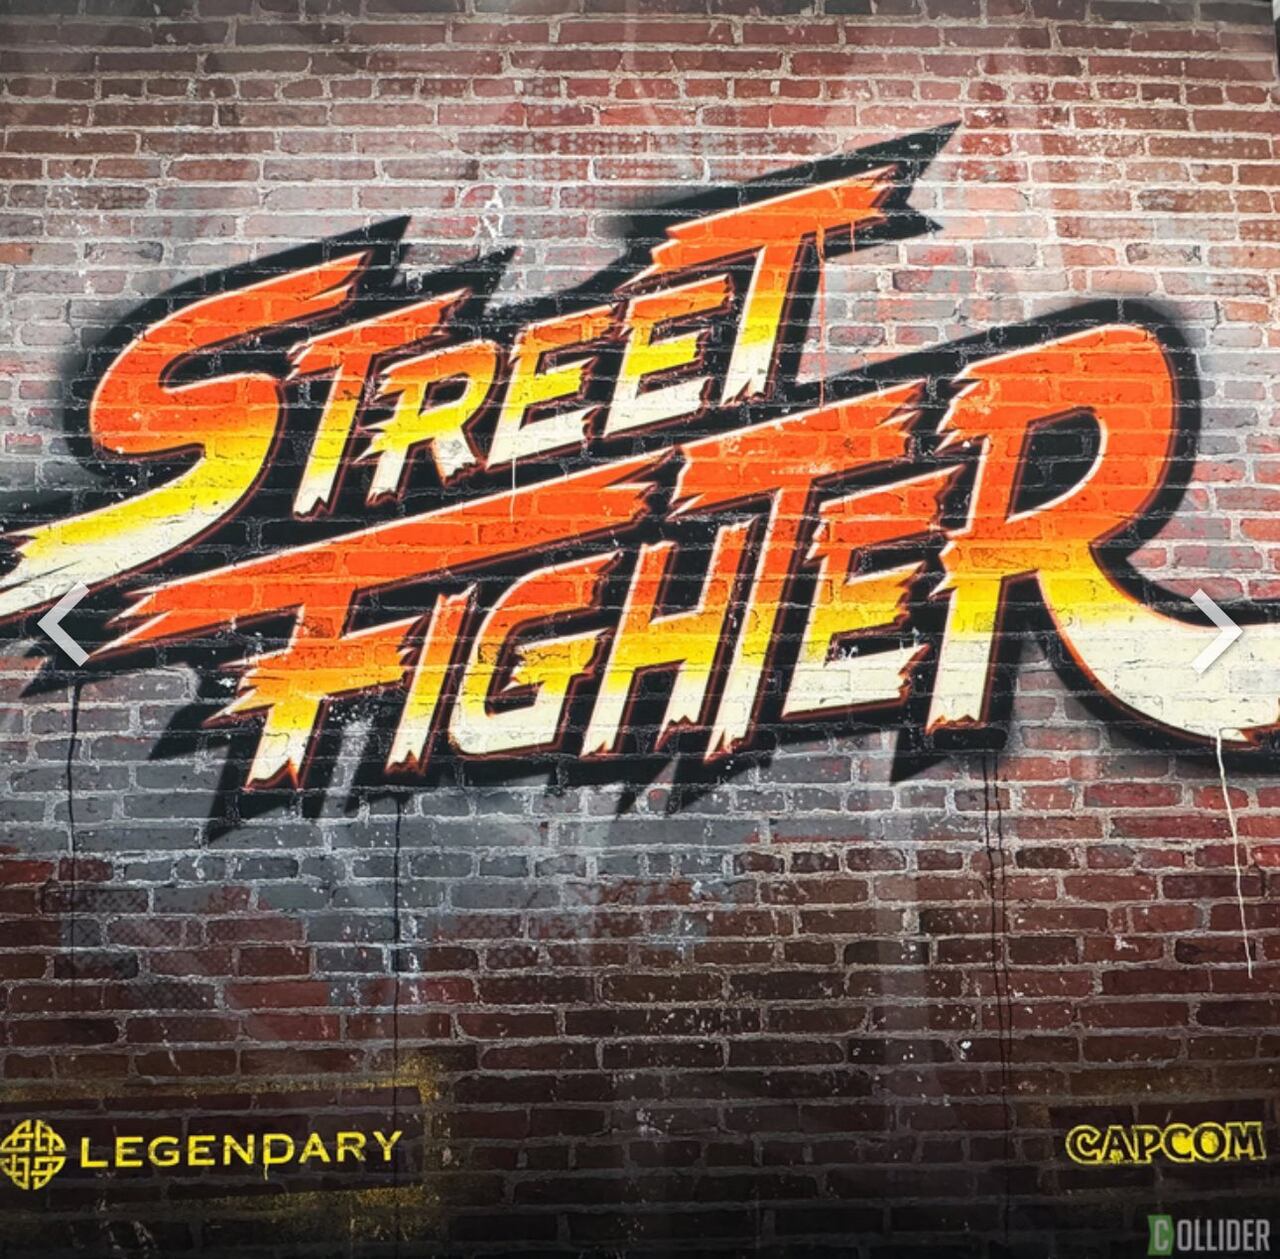 El primer póster oficial del próximo live-action de "Street Fighter" fue revelado en el evento Las Vegas Licensing Expo, mostrando la colaboración entre Capcom y Legendary Entertainment para esta ambiciosa producción.